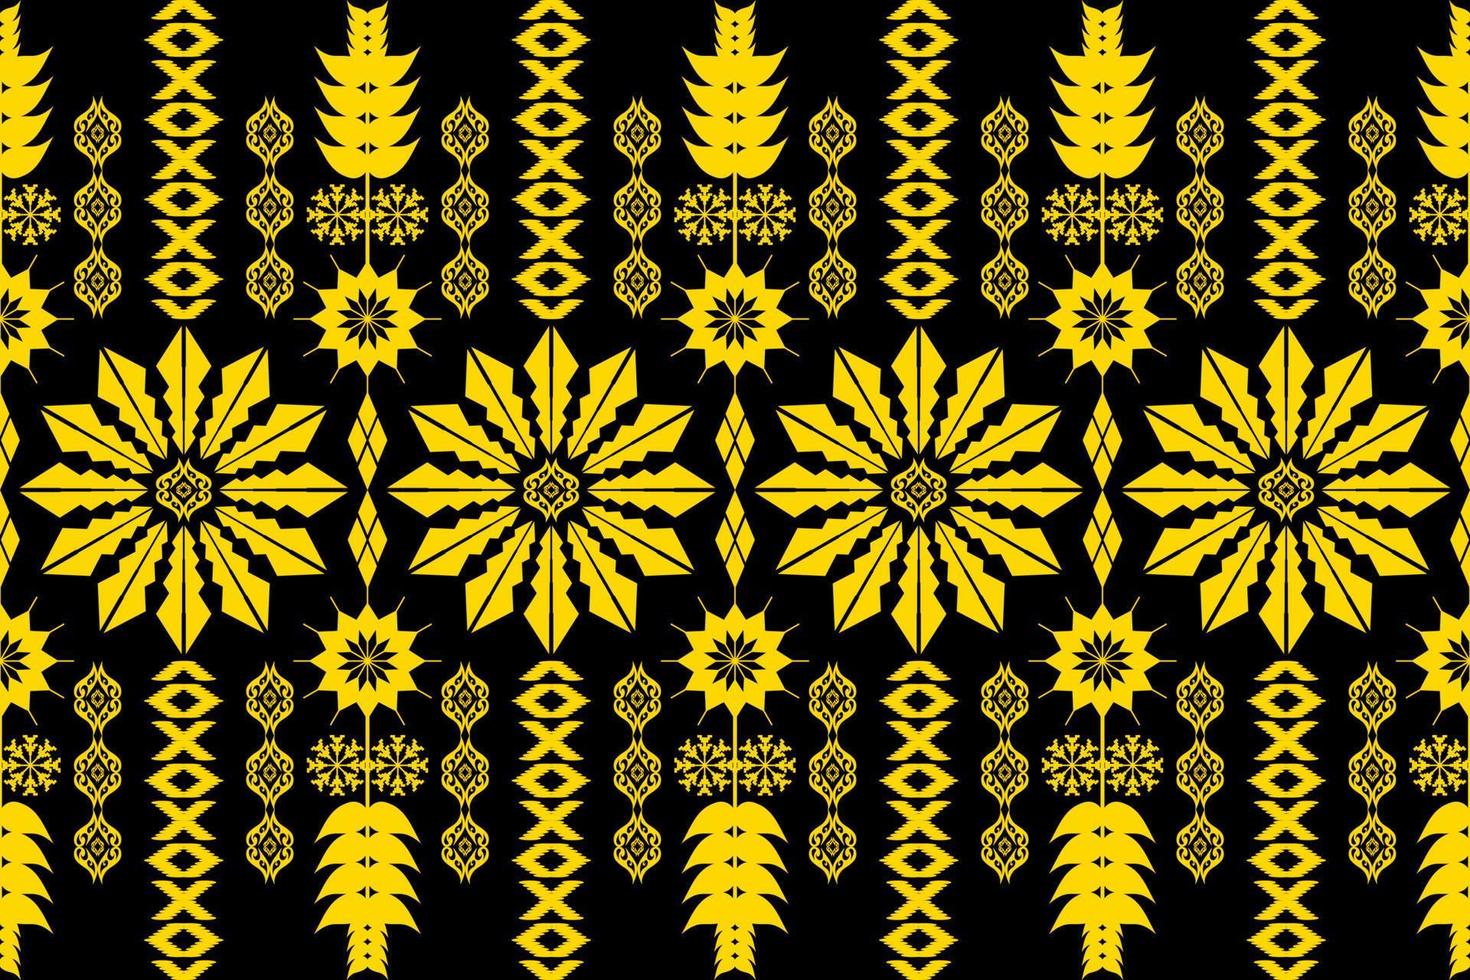 geometrisches ethnisches orientalisches traditionelles kunstmuster. figur stammesstickerei style.design für ethnischen hintergrund, tapete, kleidung, verpackung, stoff, element, sarong, vektorillustration vektor